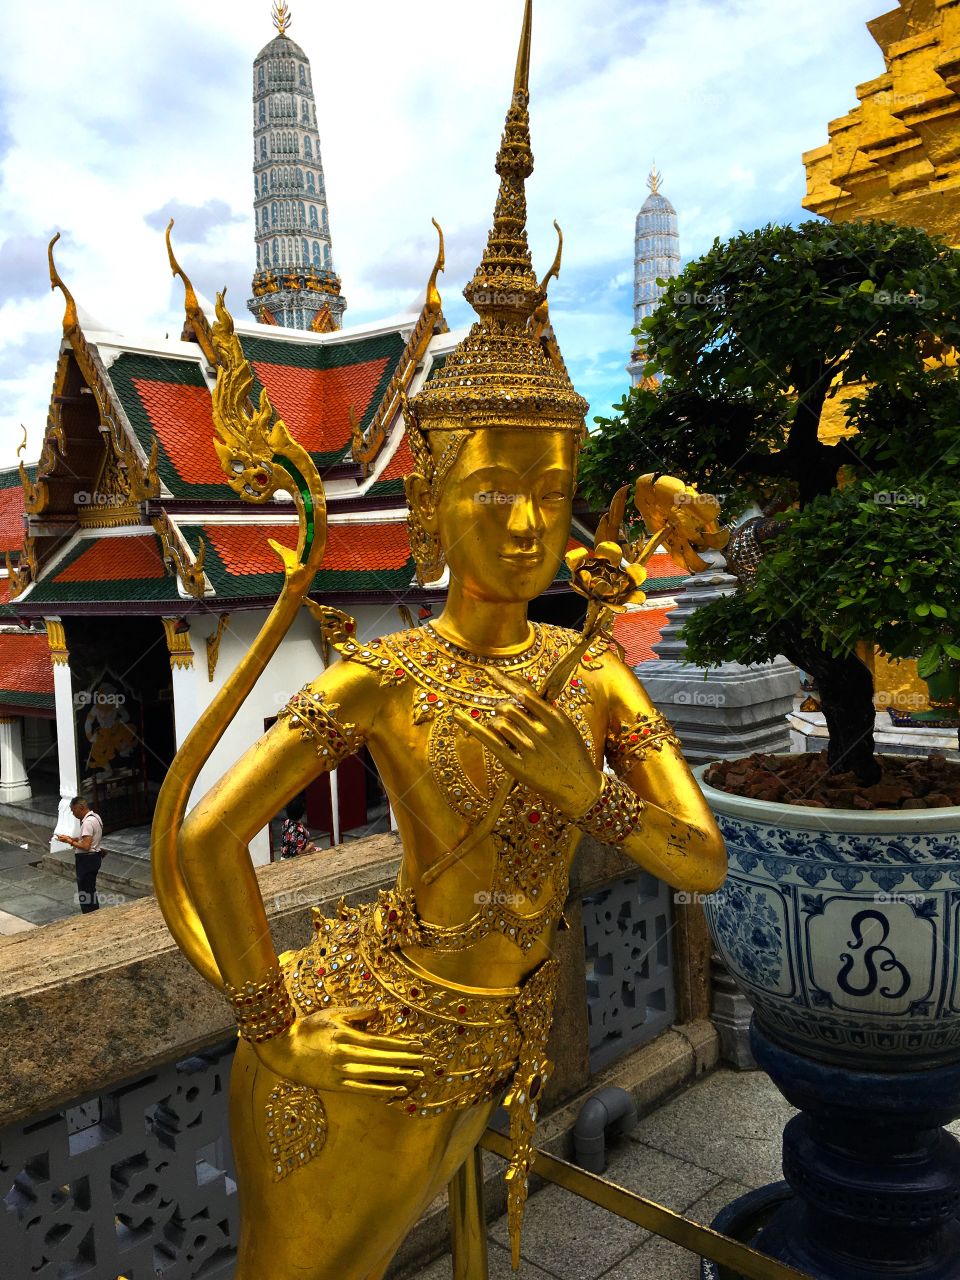 Grand Palace / Bangkok Thailand 64